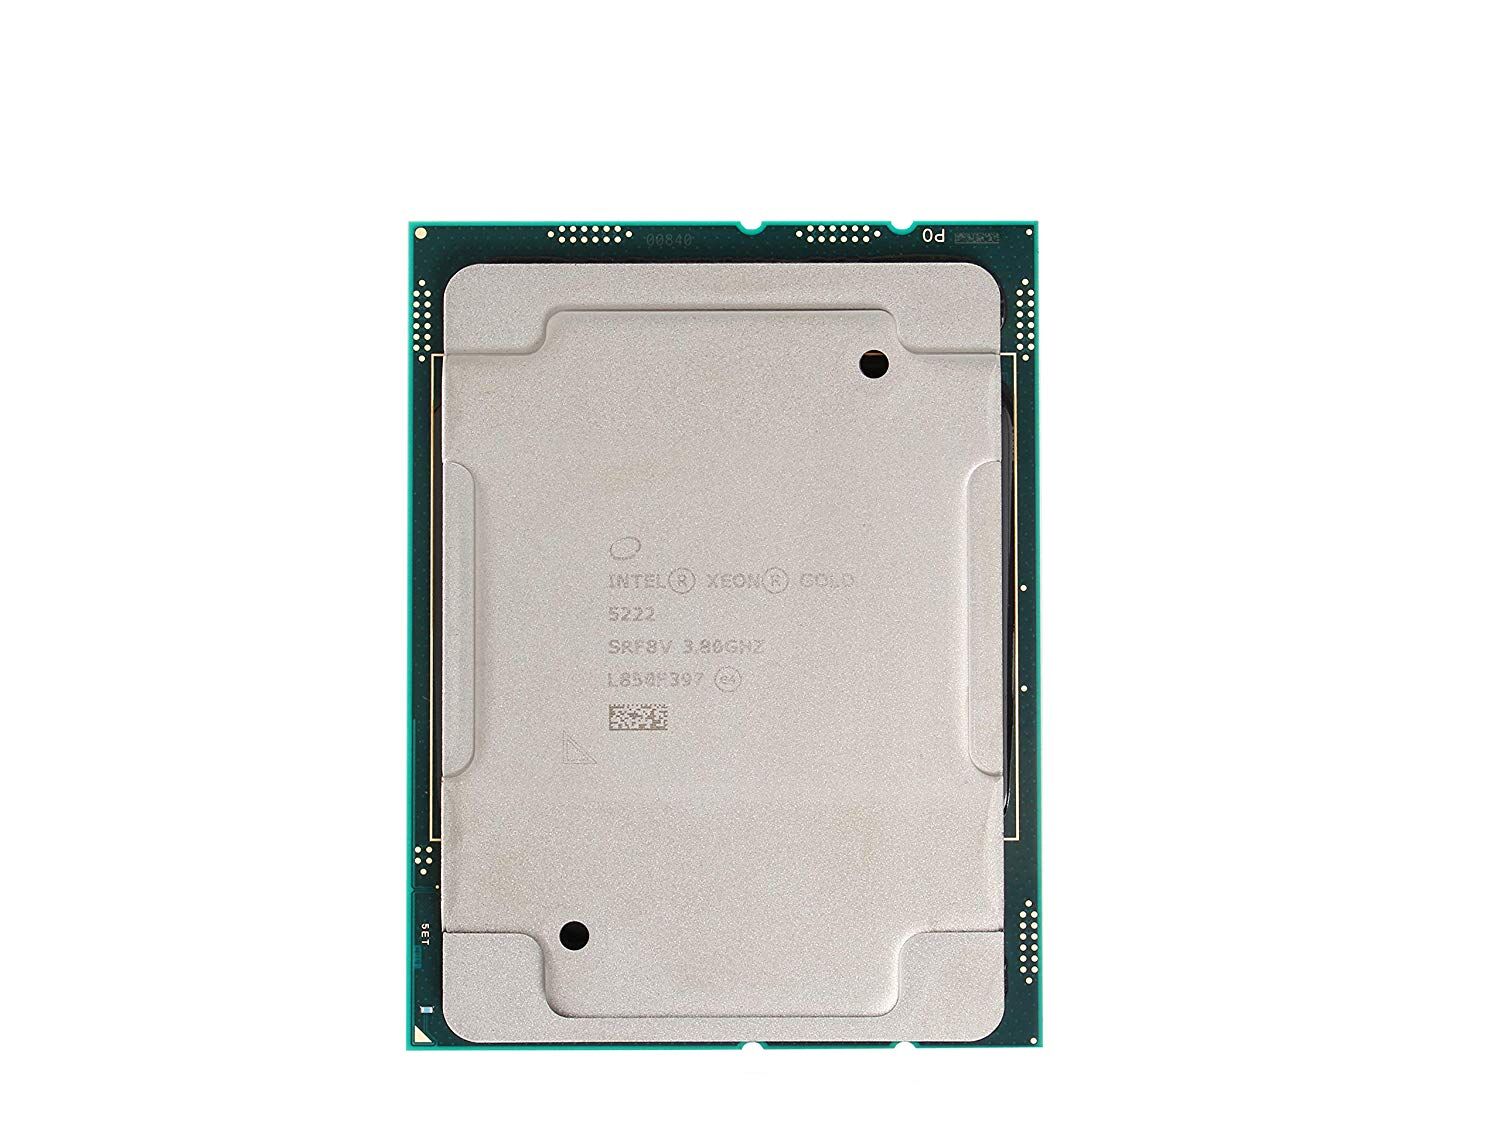 Процессор Intel Intel Xeon Gold 5222 SRF8V/(3.8GHz) сокет 3647 L3 кэш 16.5MB/